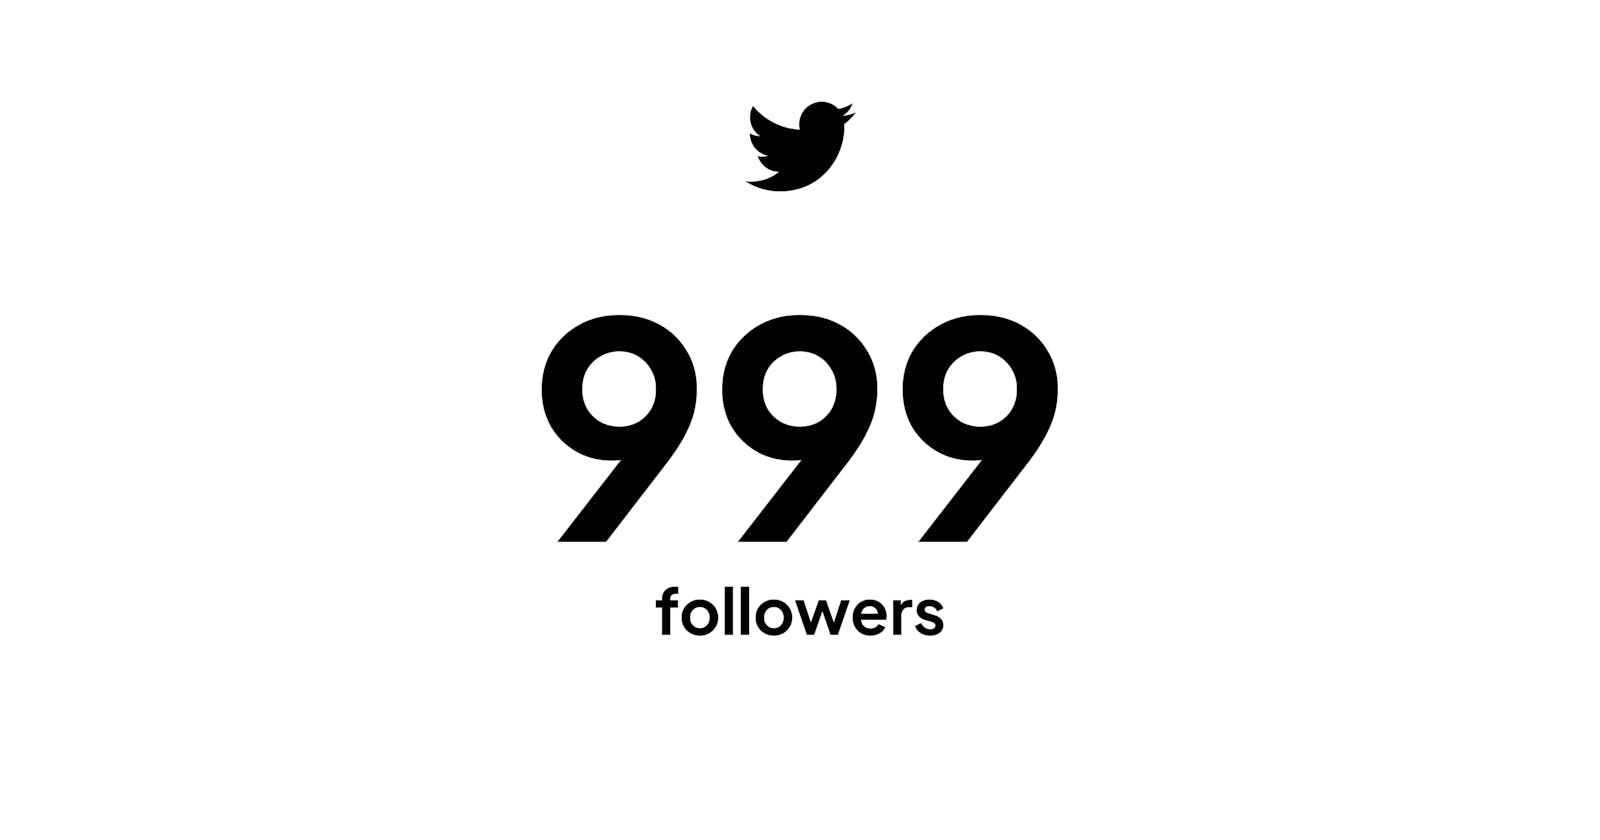 慶祝 Twitter 999 followers！